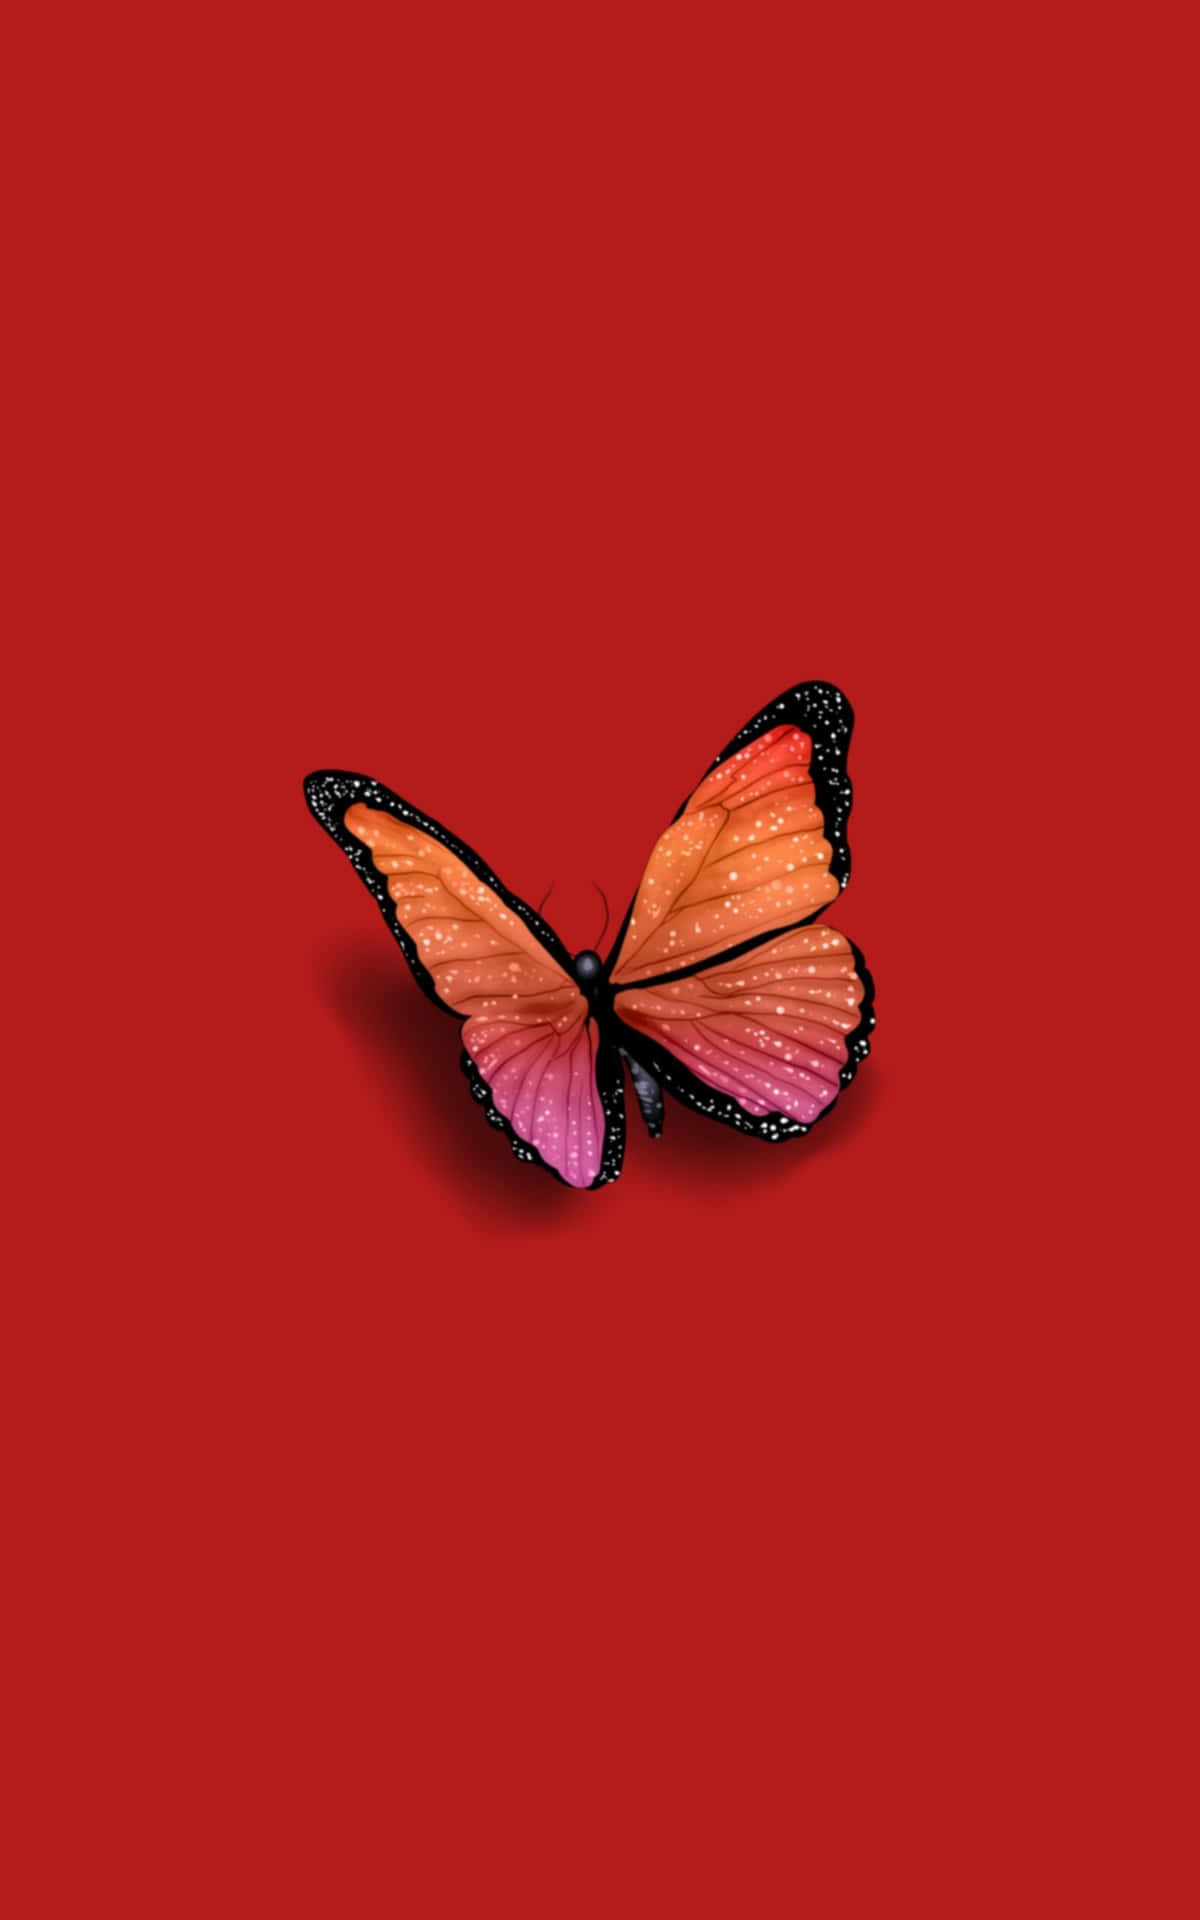 VSCO Butterfly In Red Aesthetic Wallpaper